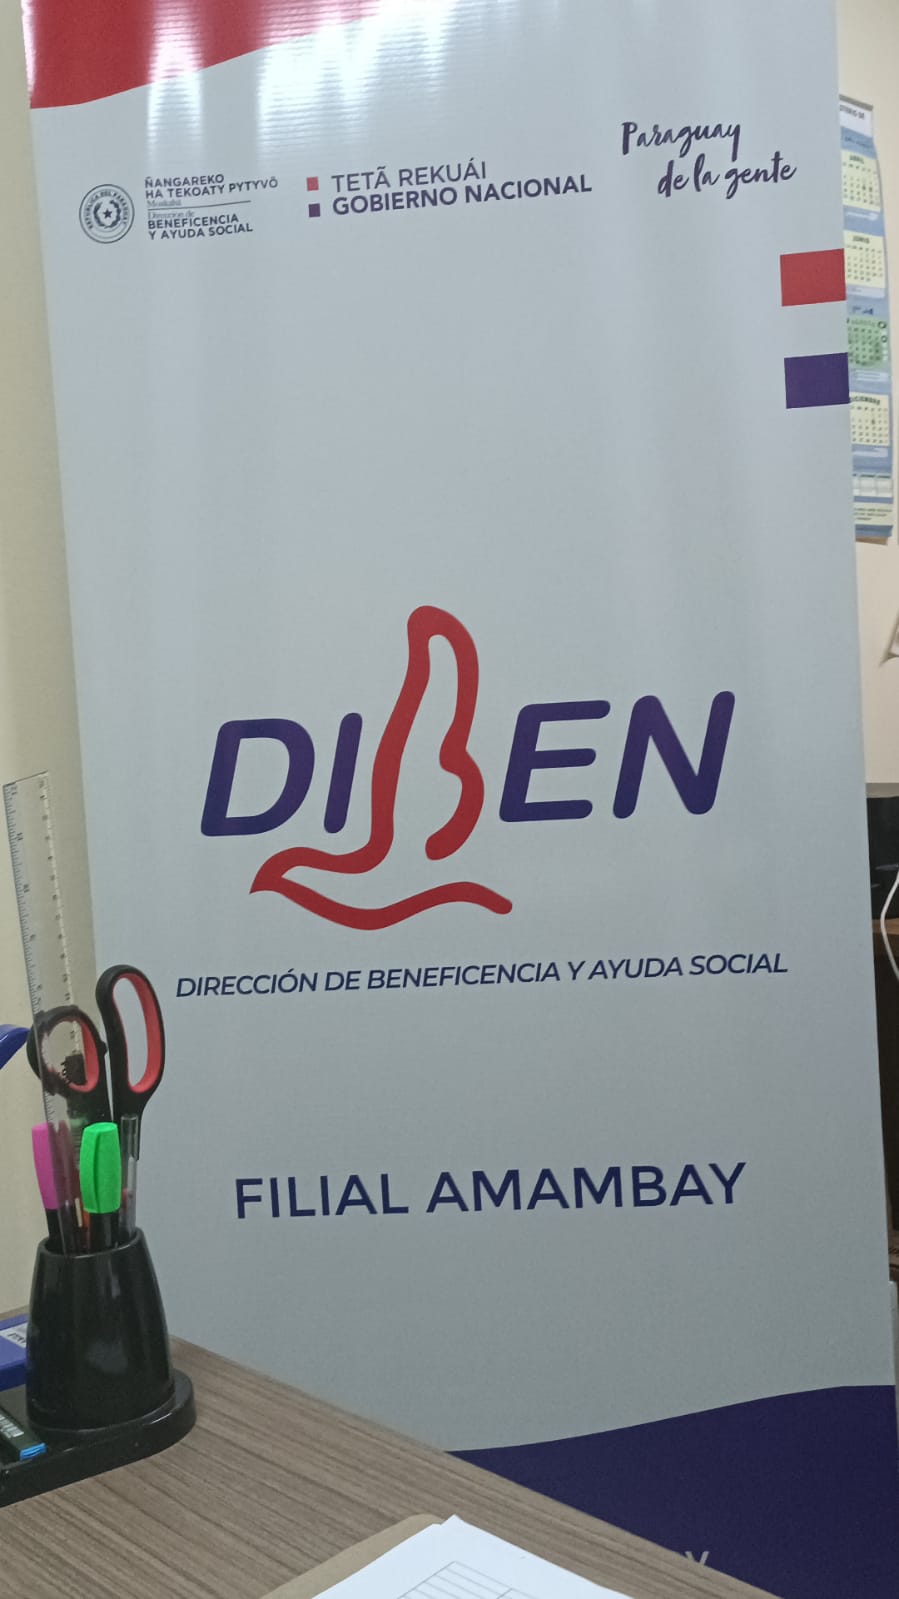 Dirección de Beneficencia y Ayuda Social (DIBEN) vuelve a reanudar sus actividades